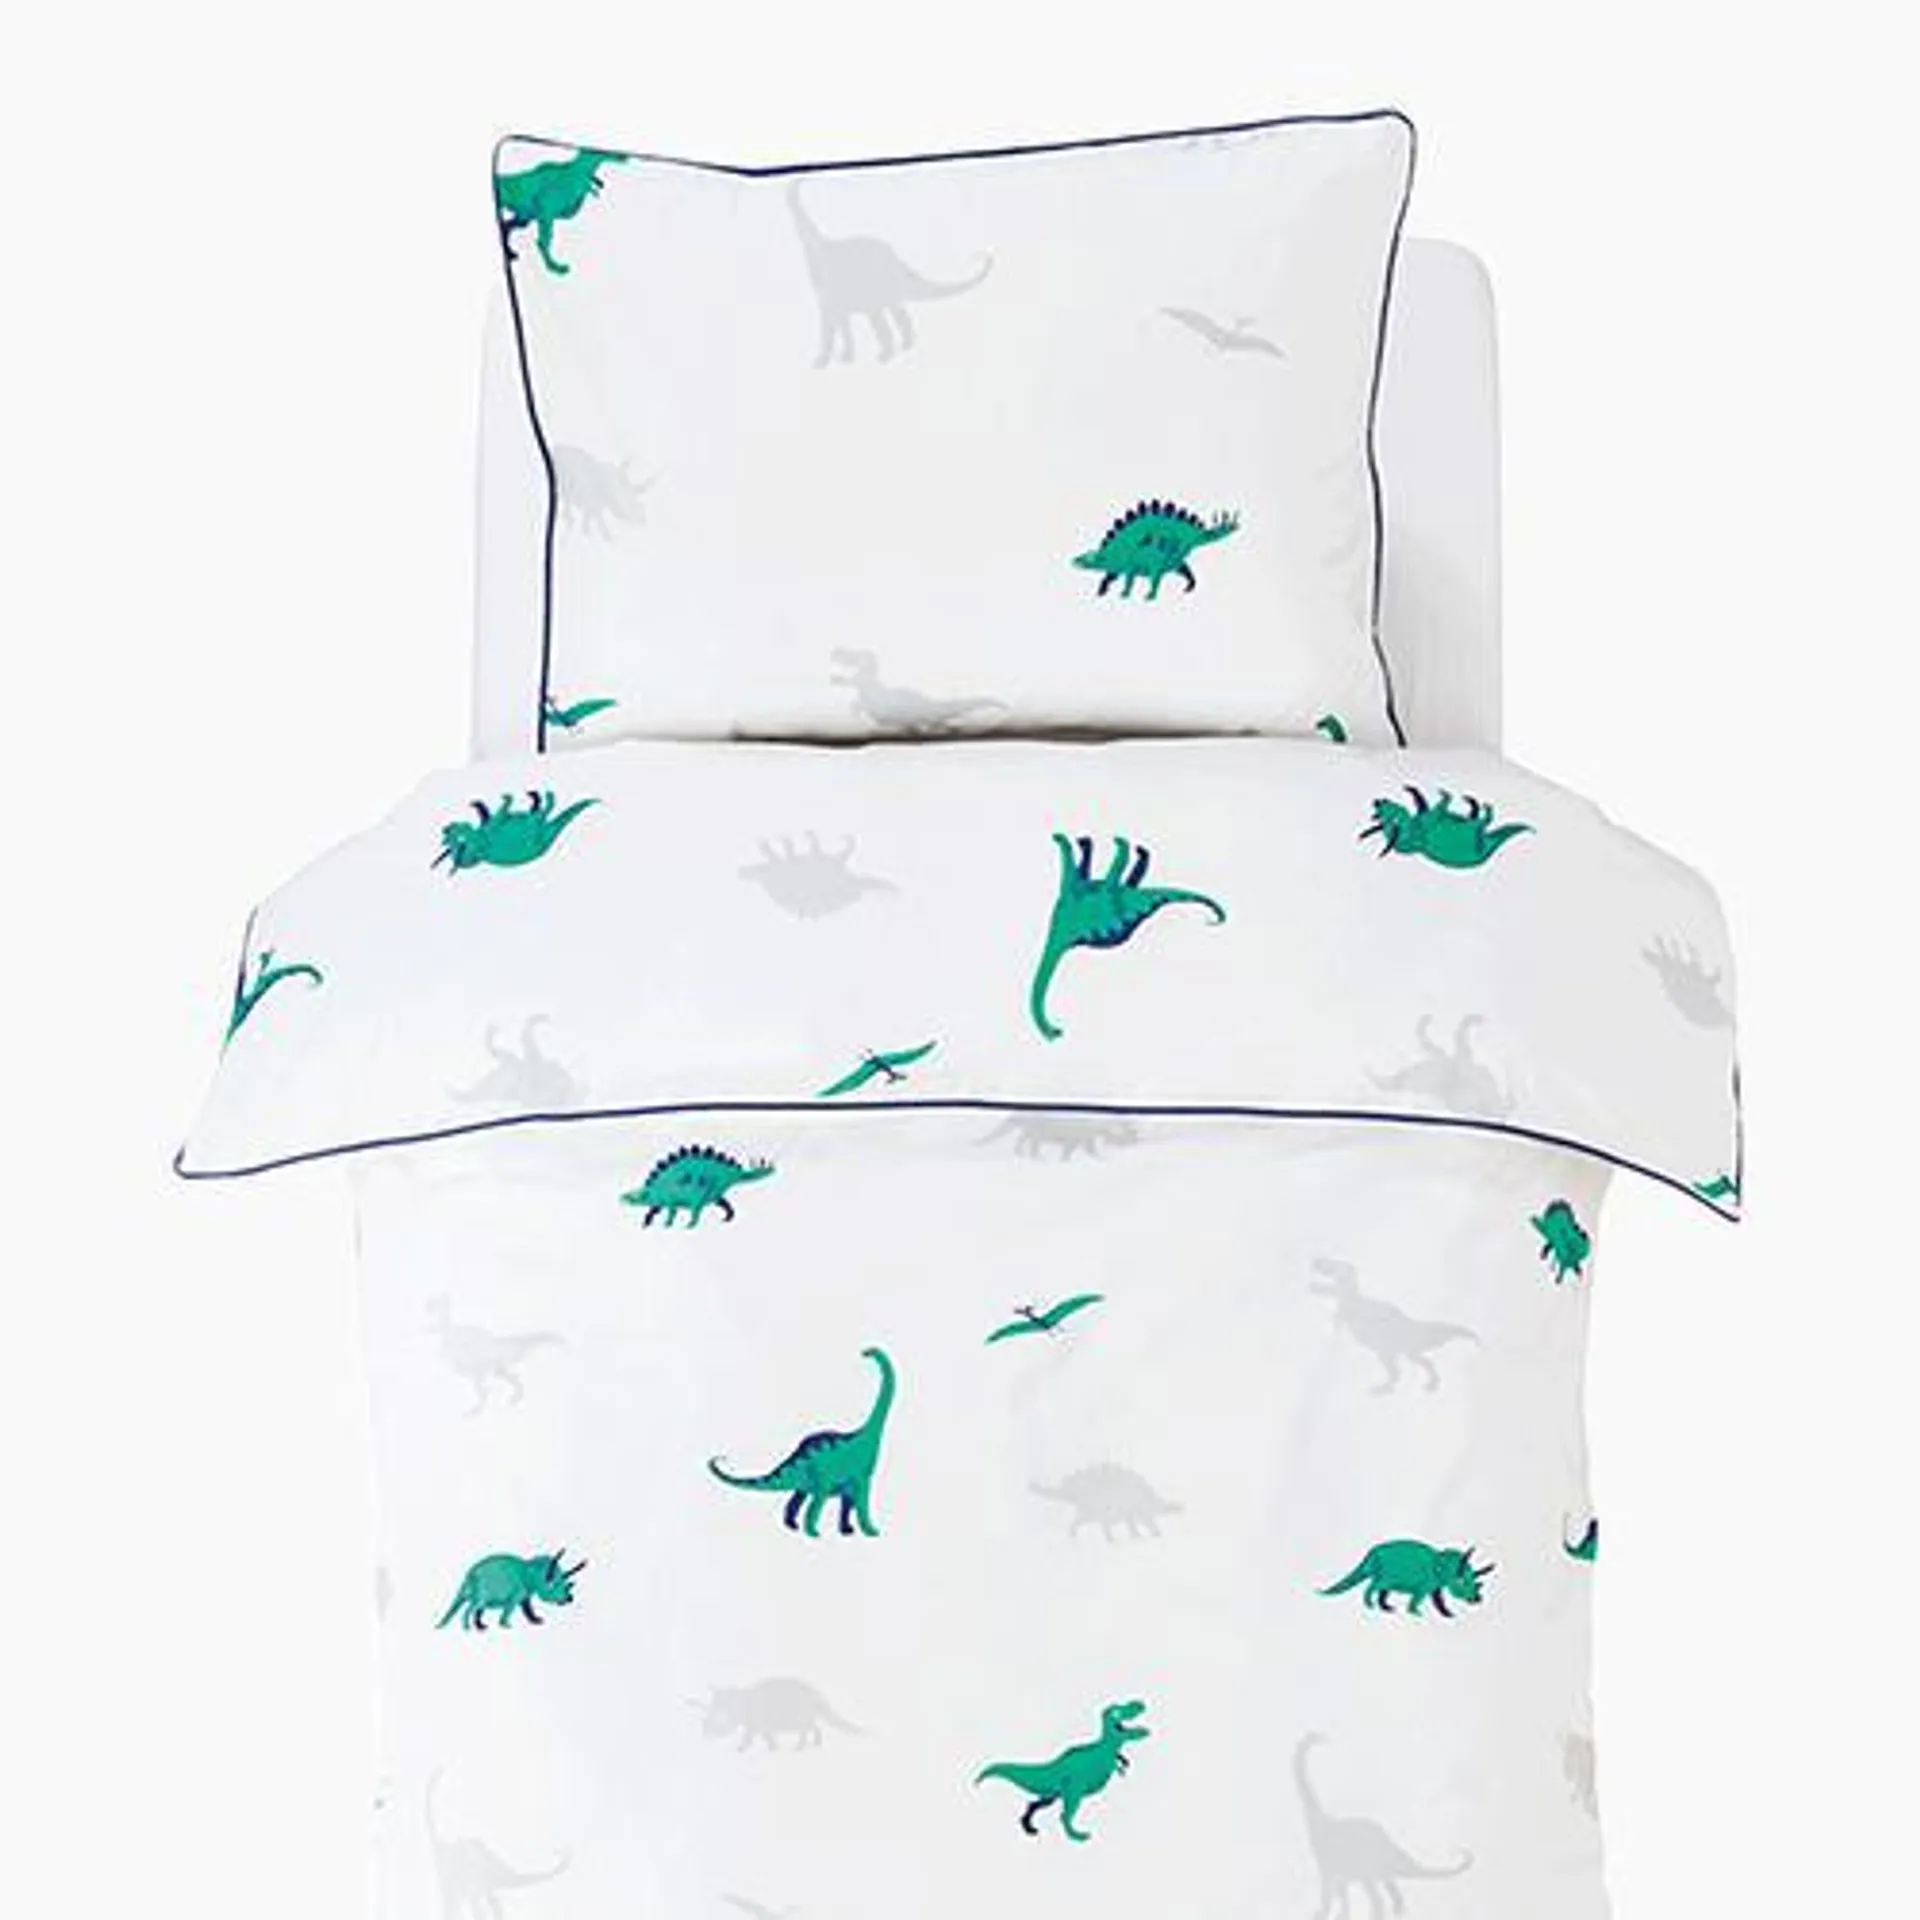 Dinosaur Bedding Set, Toddler/Cot Bed